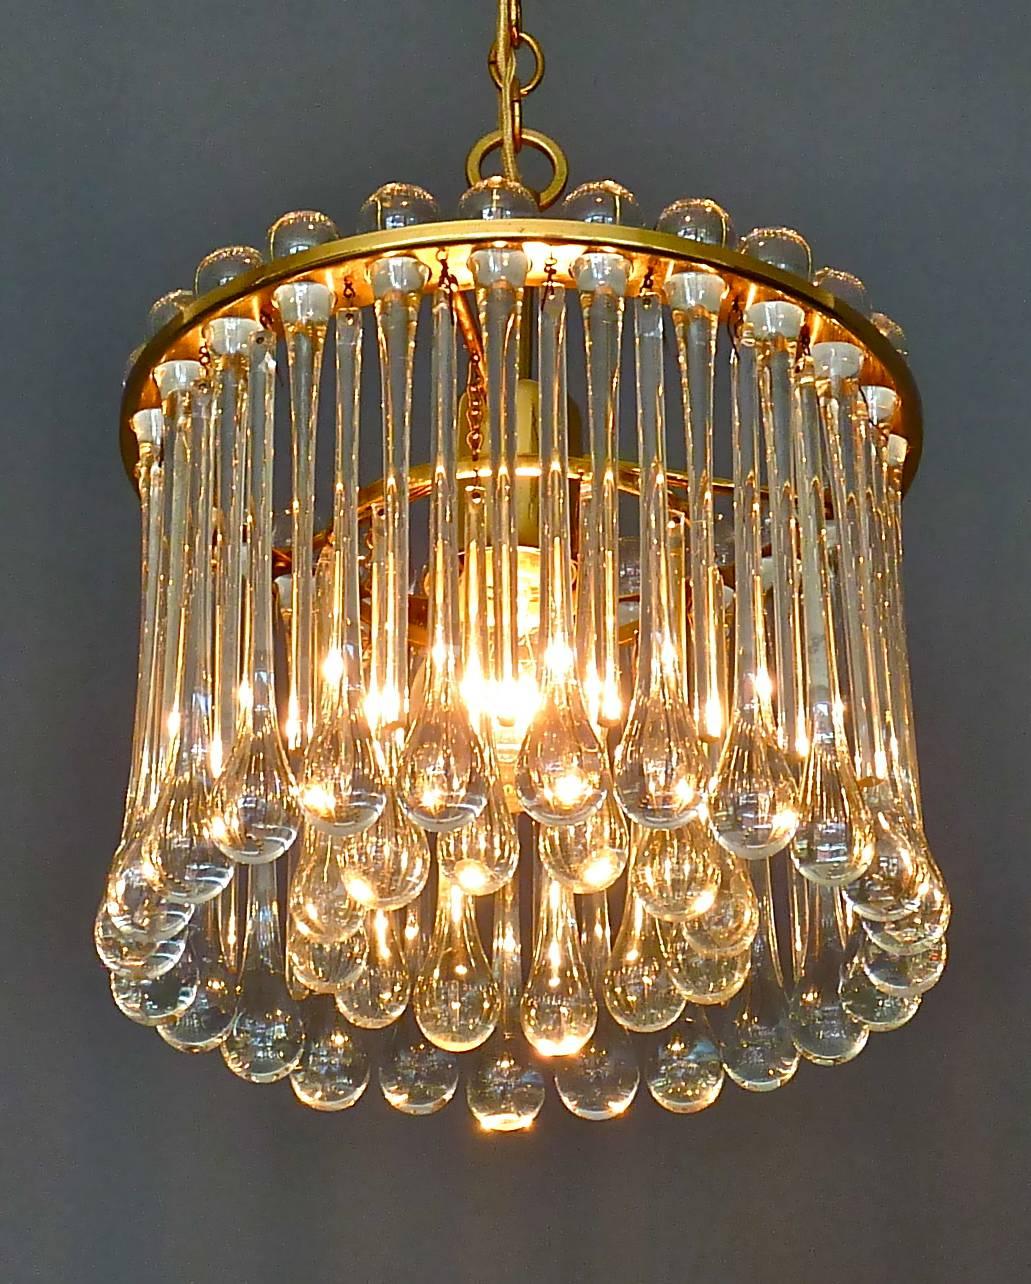 Lustre en métal laiton doré et verre de cristal fabriqué par Palwa, Allemagne, vers 1960-1970. Le lustre à longueur réglable suspendu à une chaîne a une construction métallique en laiton doré avec de nombreuses gouttes allongées en verre de Murano